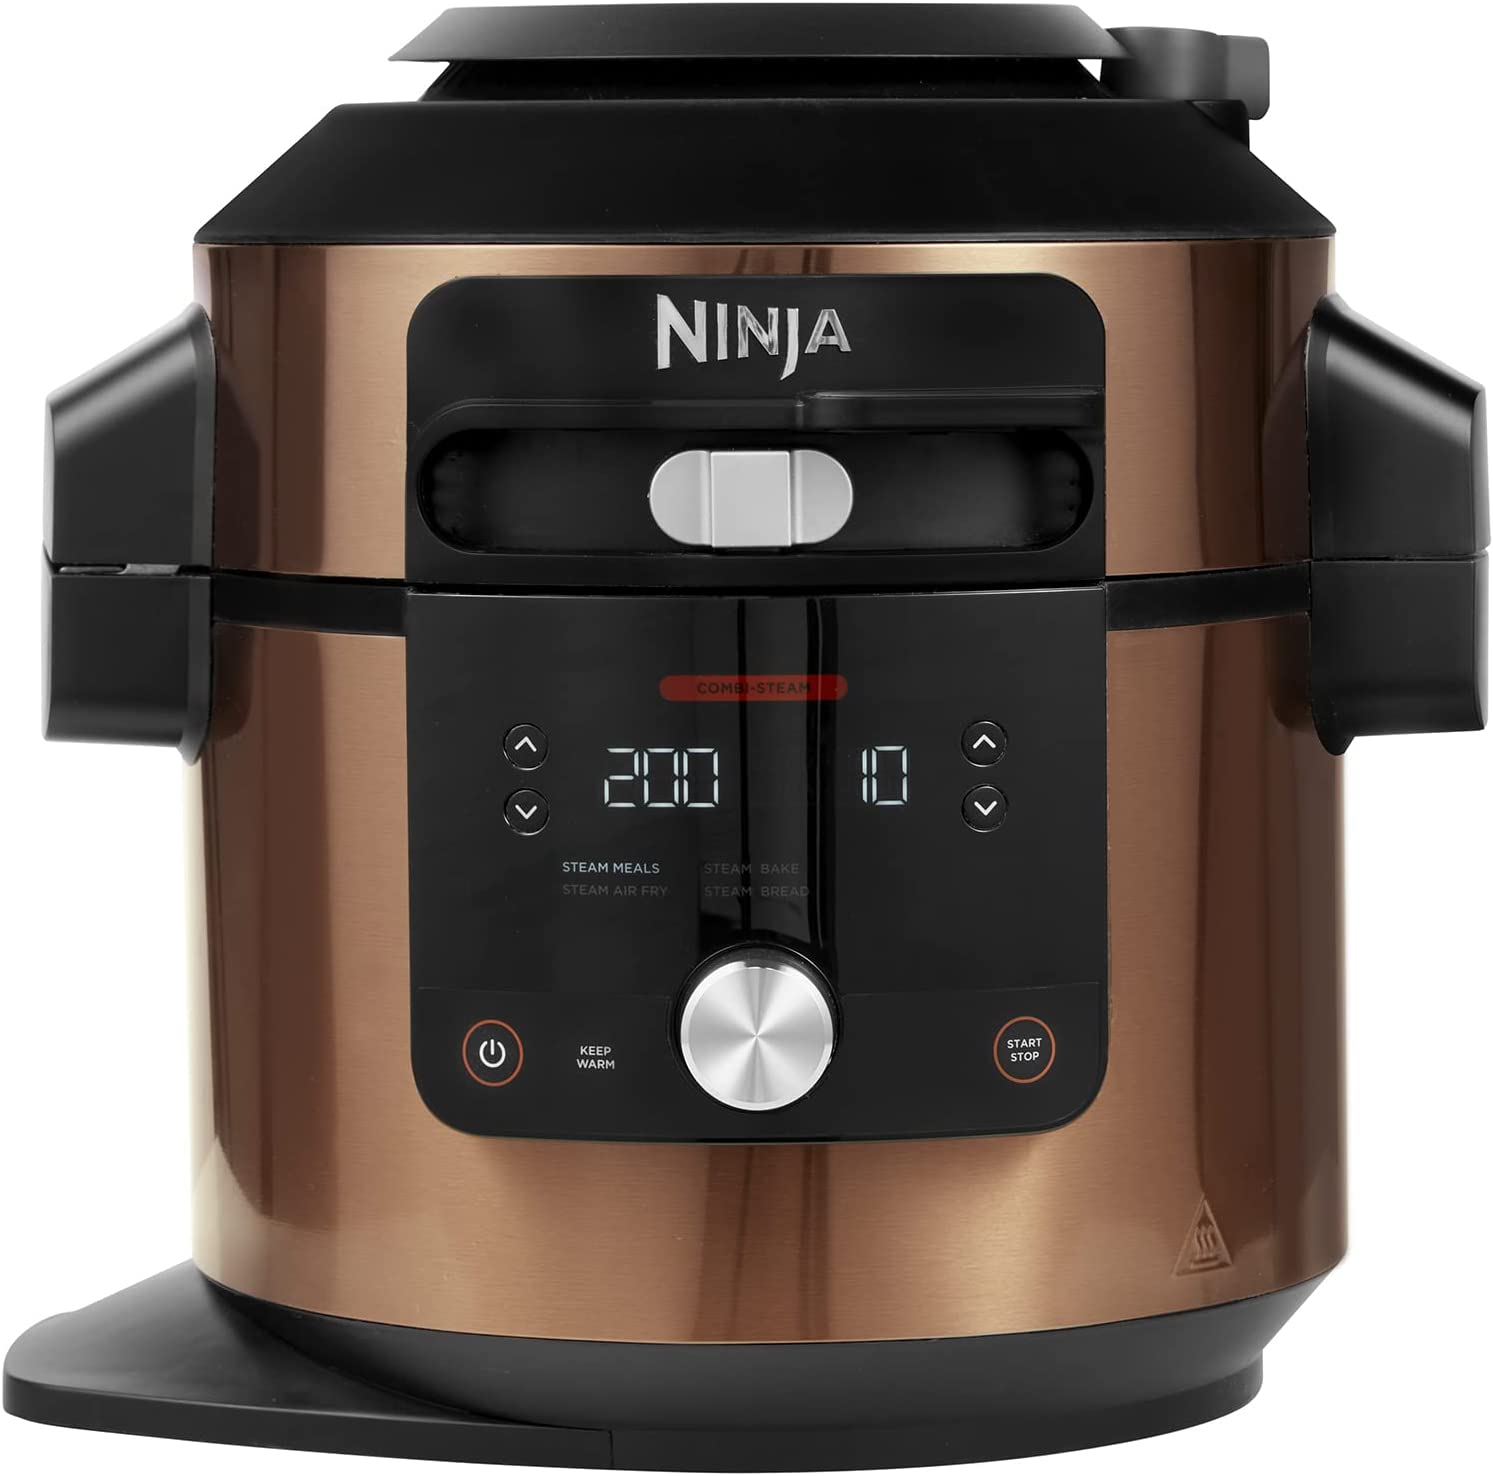 Ninja Foodi multi-cooker is on sale at